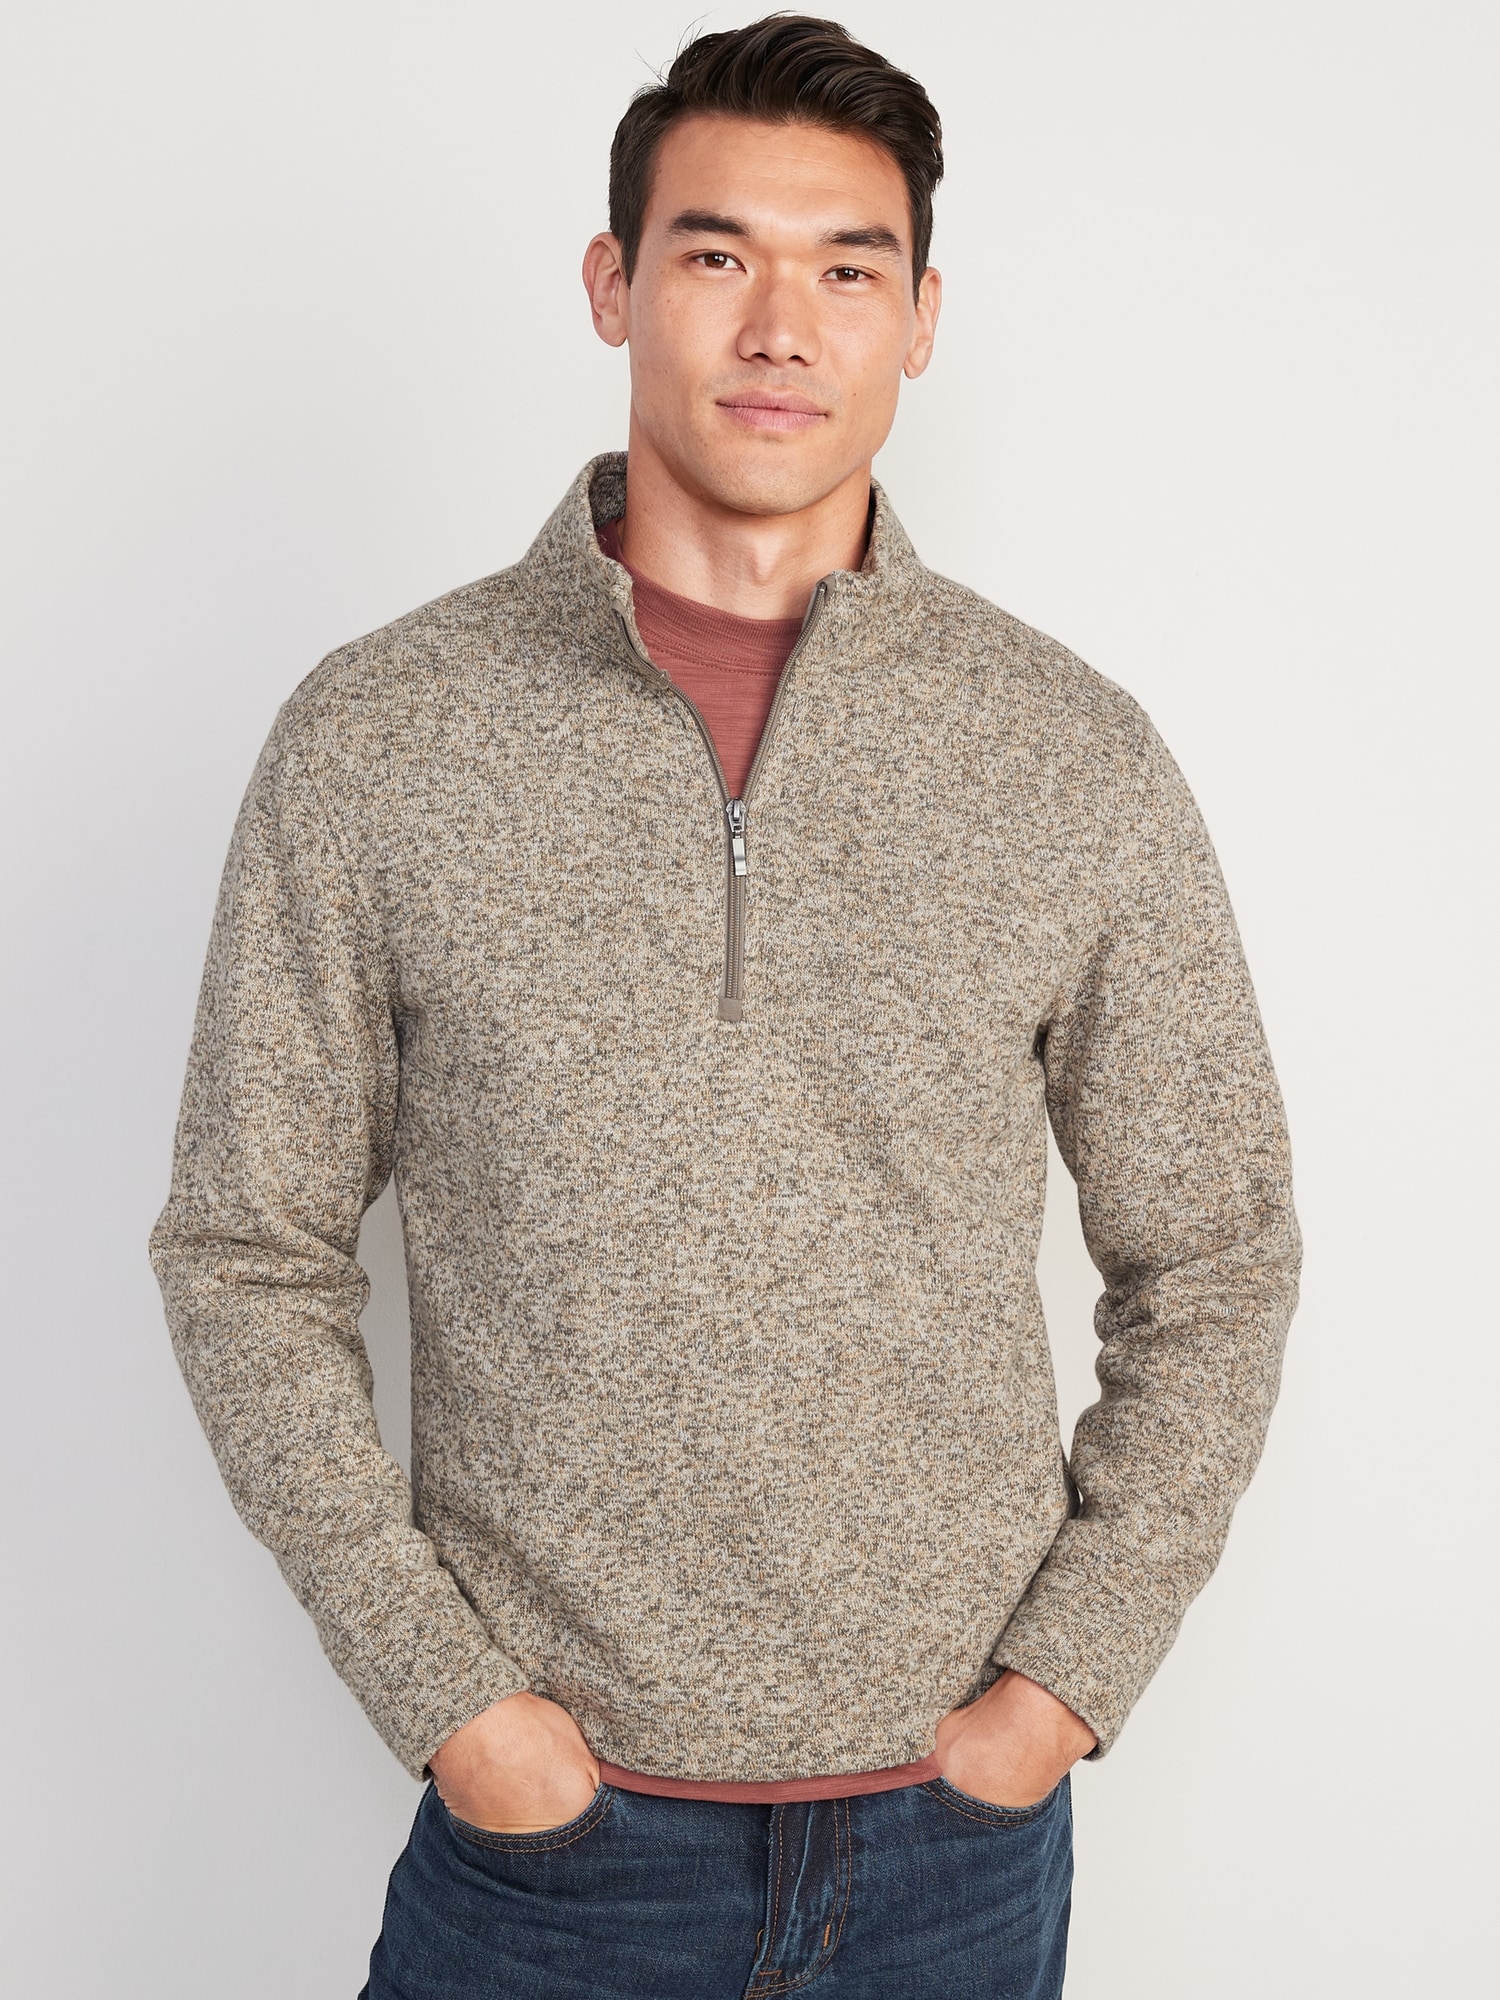 Sweater-Fleece Mock-Neck Quarter Zip Sweatshirt | Old Navy